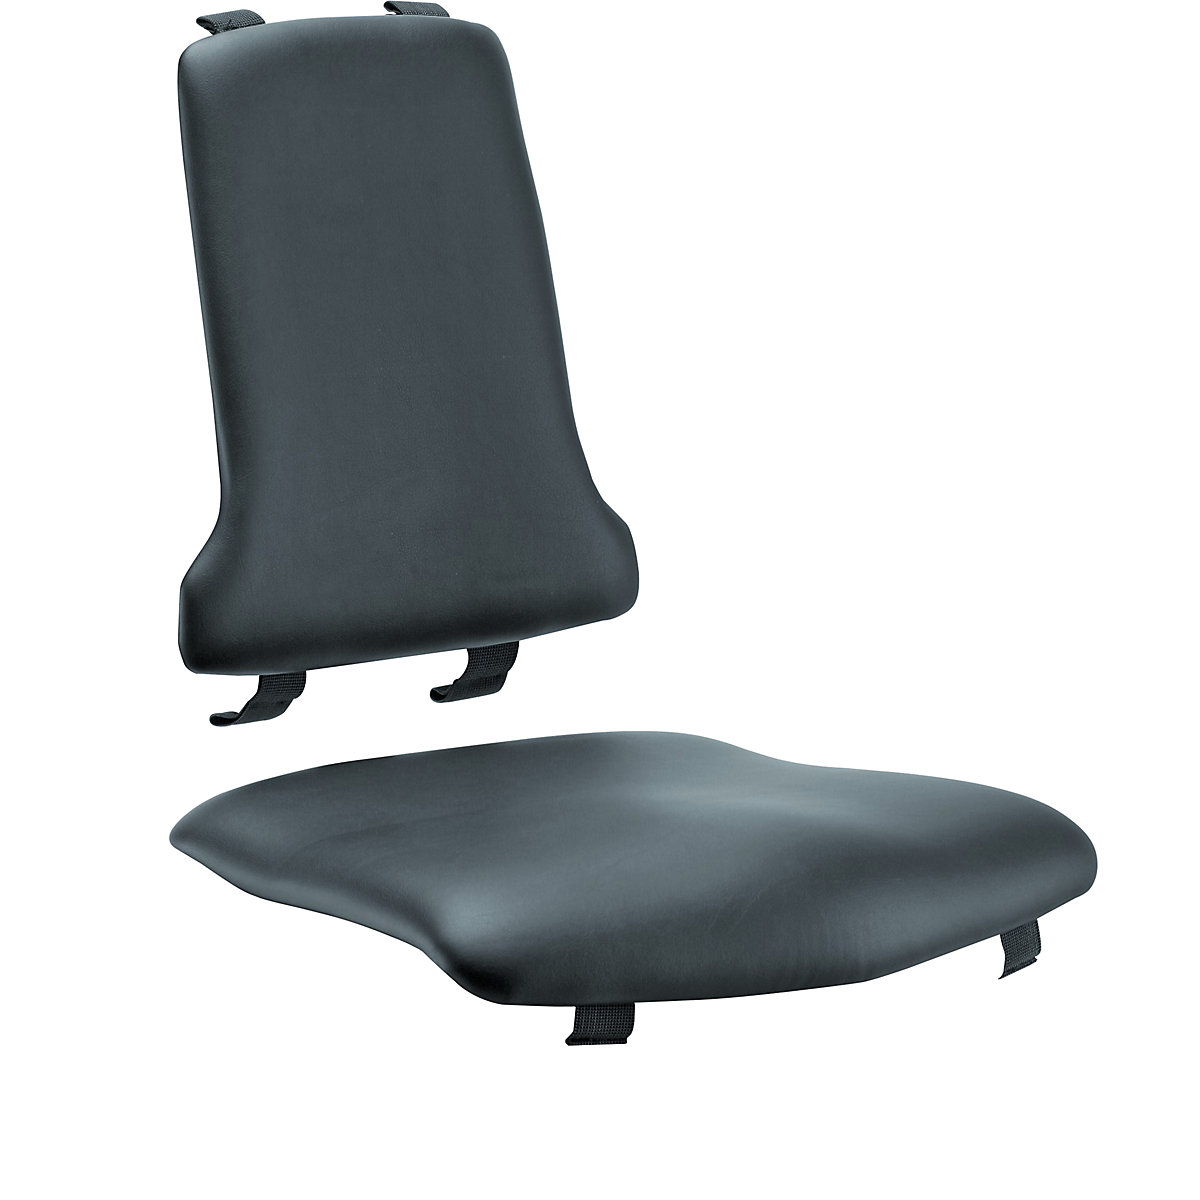 Polster bimos, Standard-Ausführung, je 1 Polster für Sitz und Rückenlehne, Kunstleder-Polster, schwarz-3